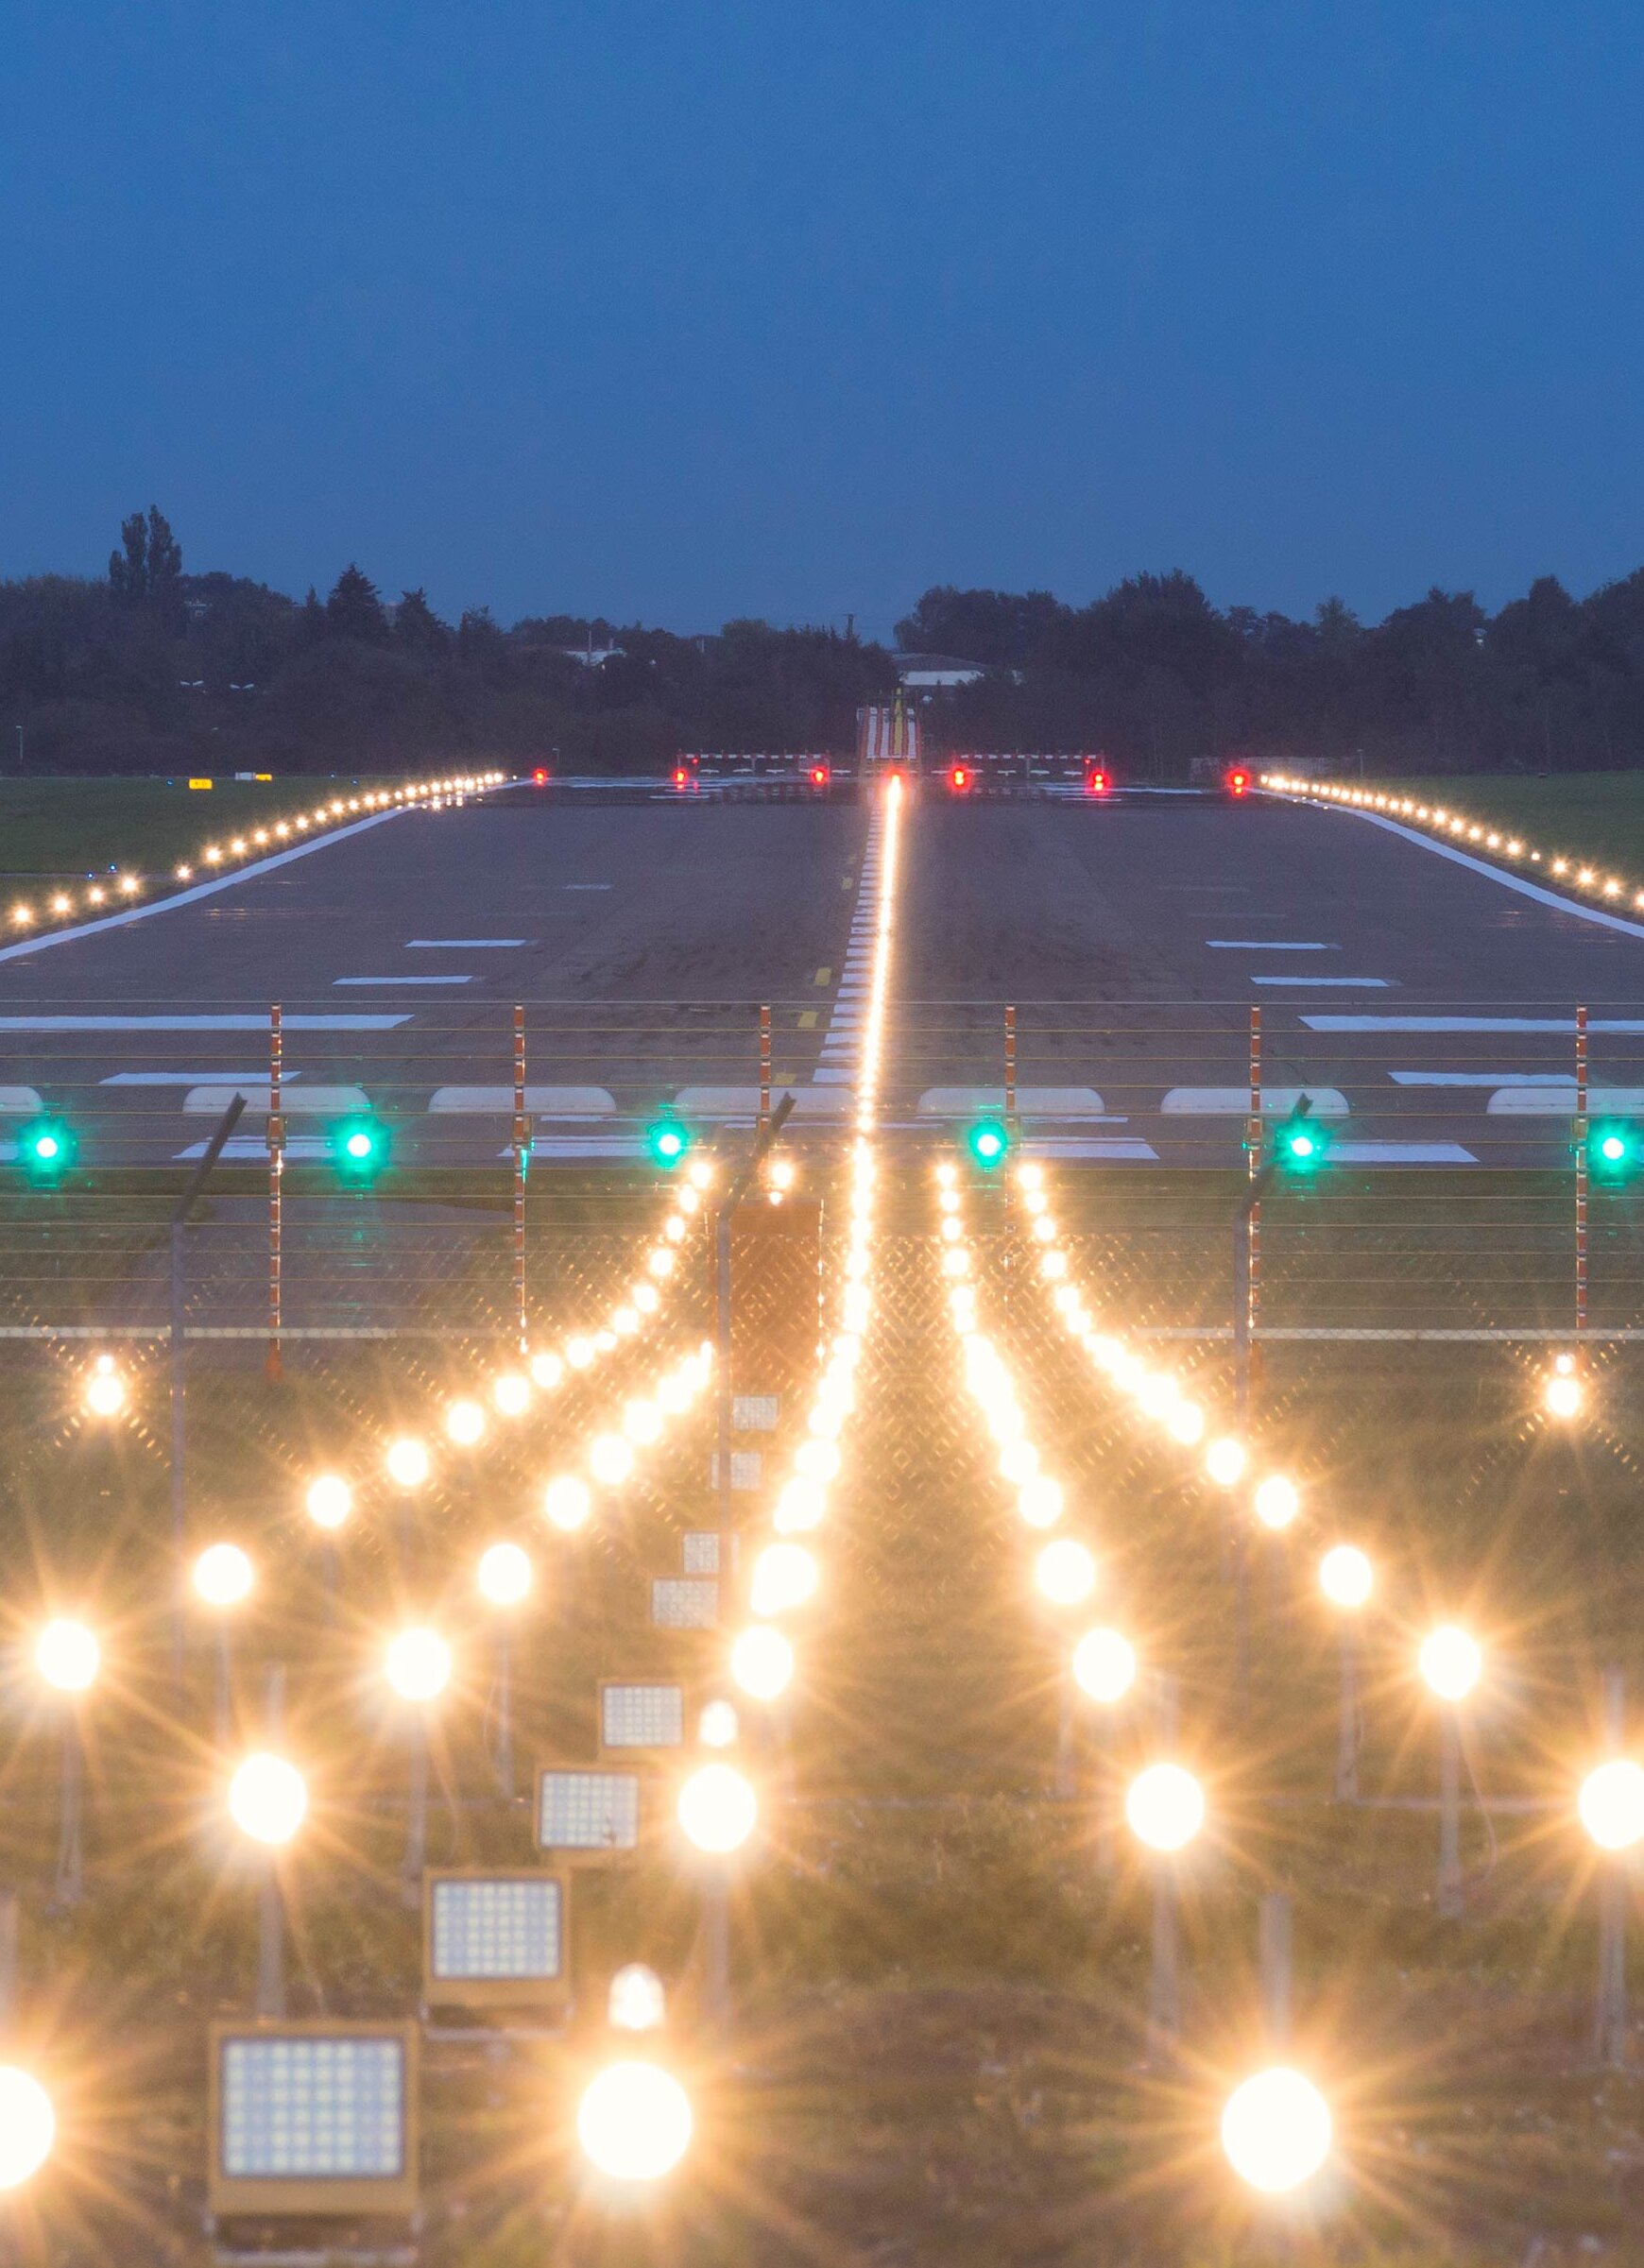 Illuminated airport runway